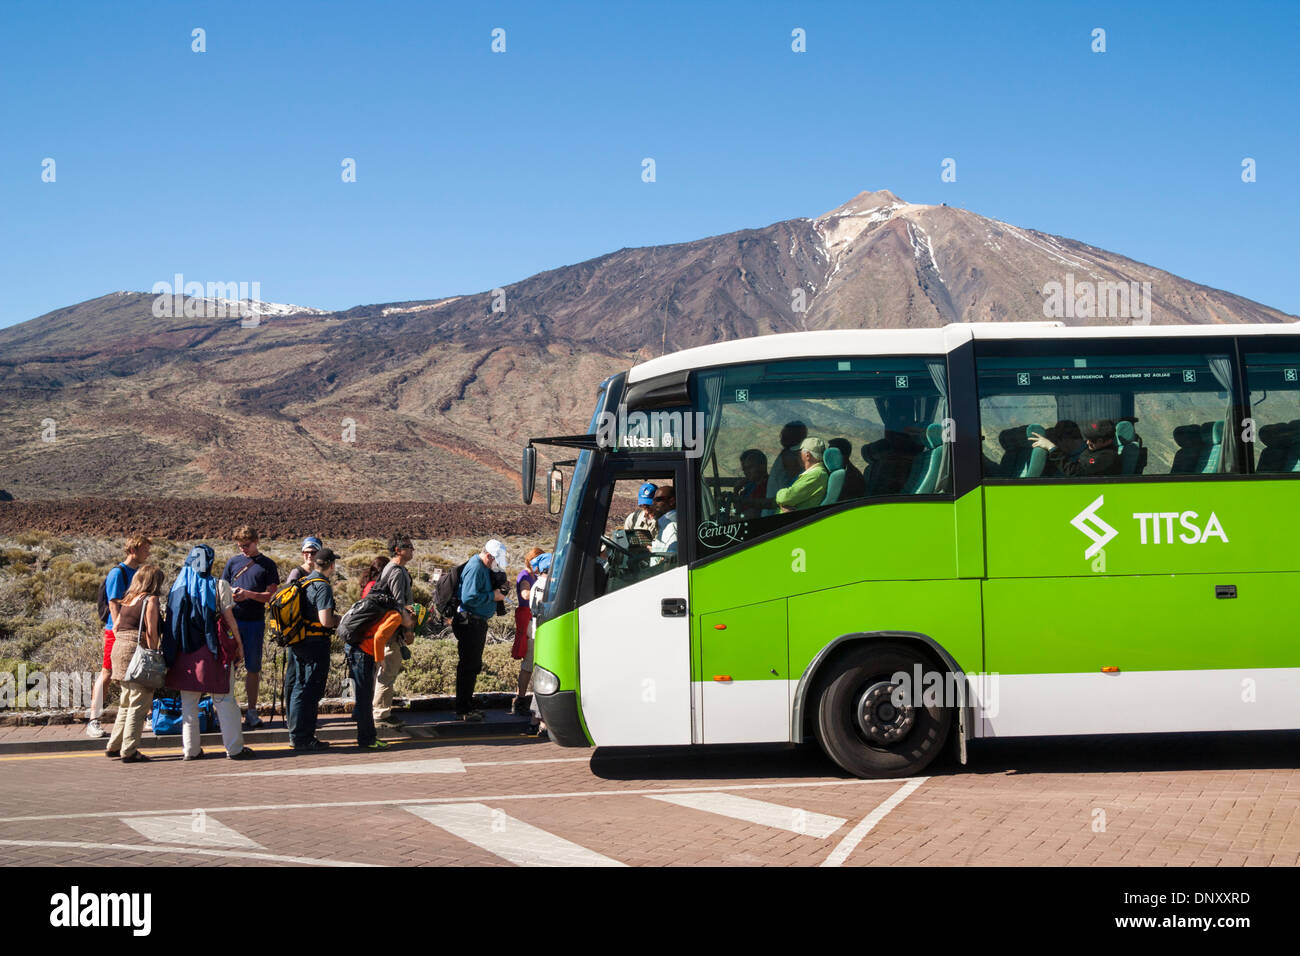 Les touristes pêchant le bus des transports publics à l'extérieur Parador Hotel dans le parc national du Teide sur Tenerife, Canaries, Espagne Banque D'Images